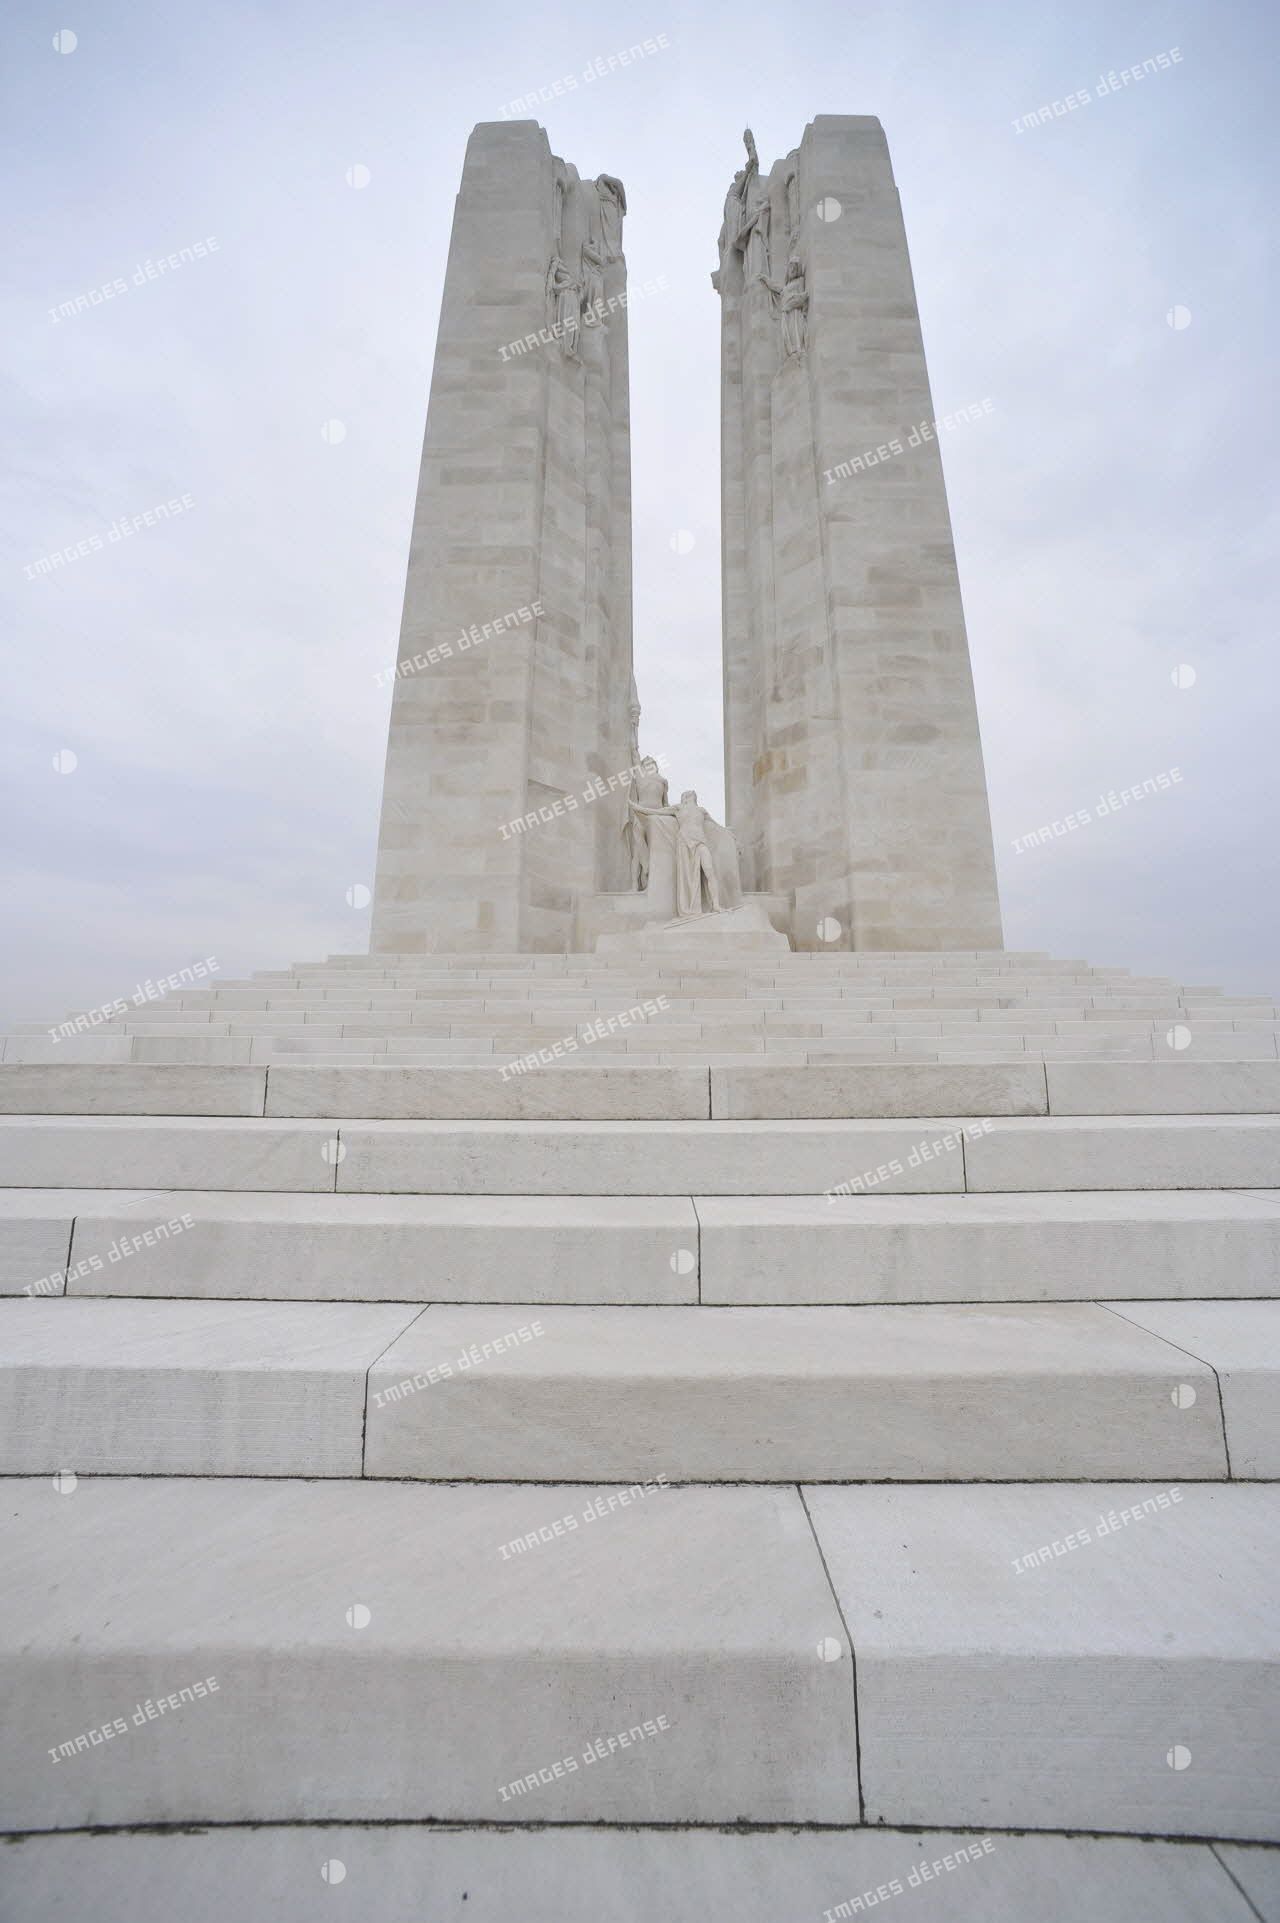 Vue en contre-plongée du mémorial national canadien de Vimy.